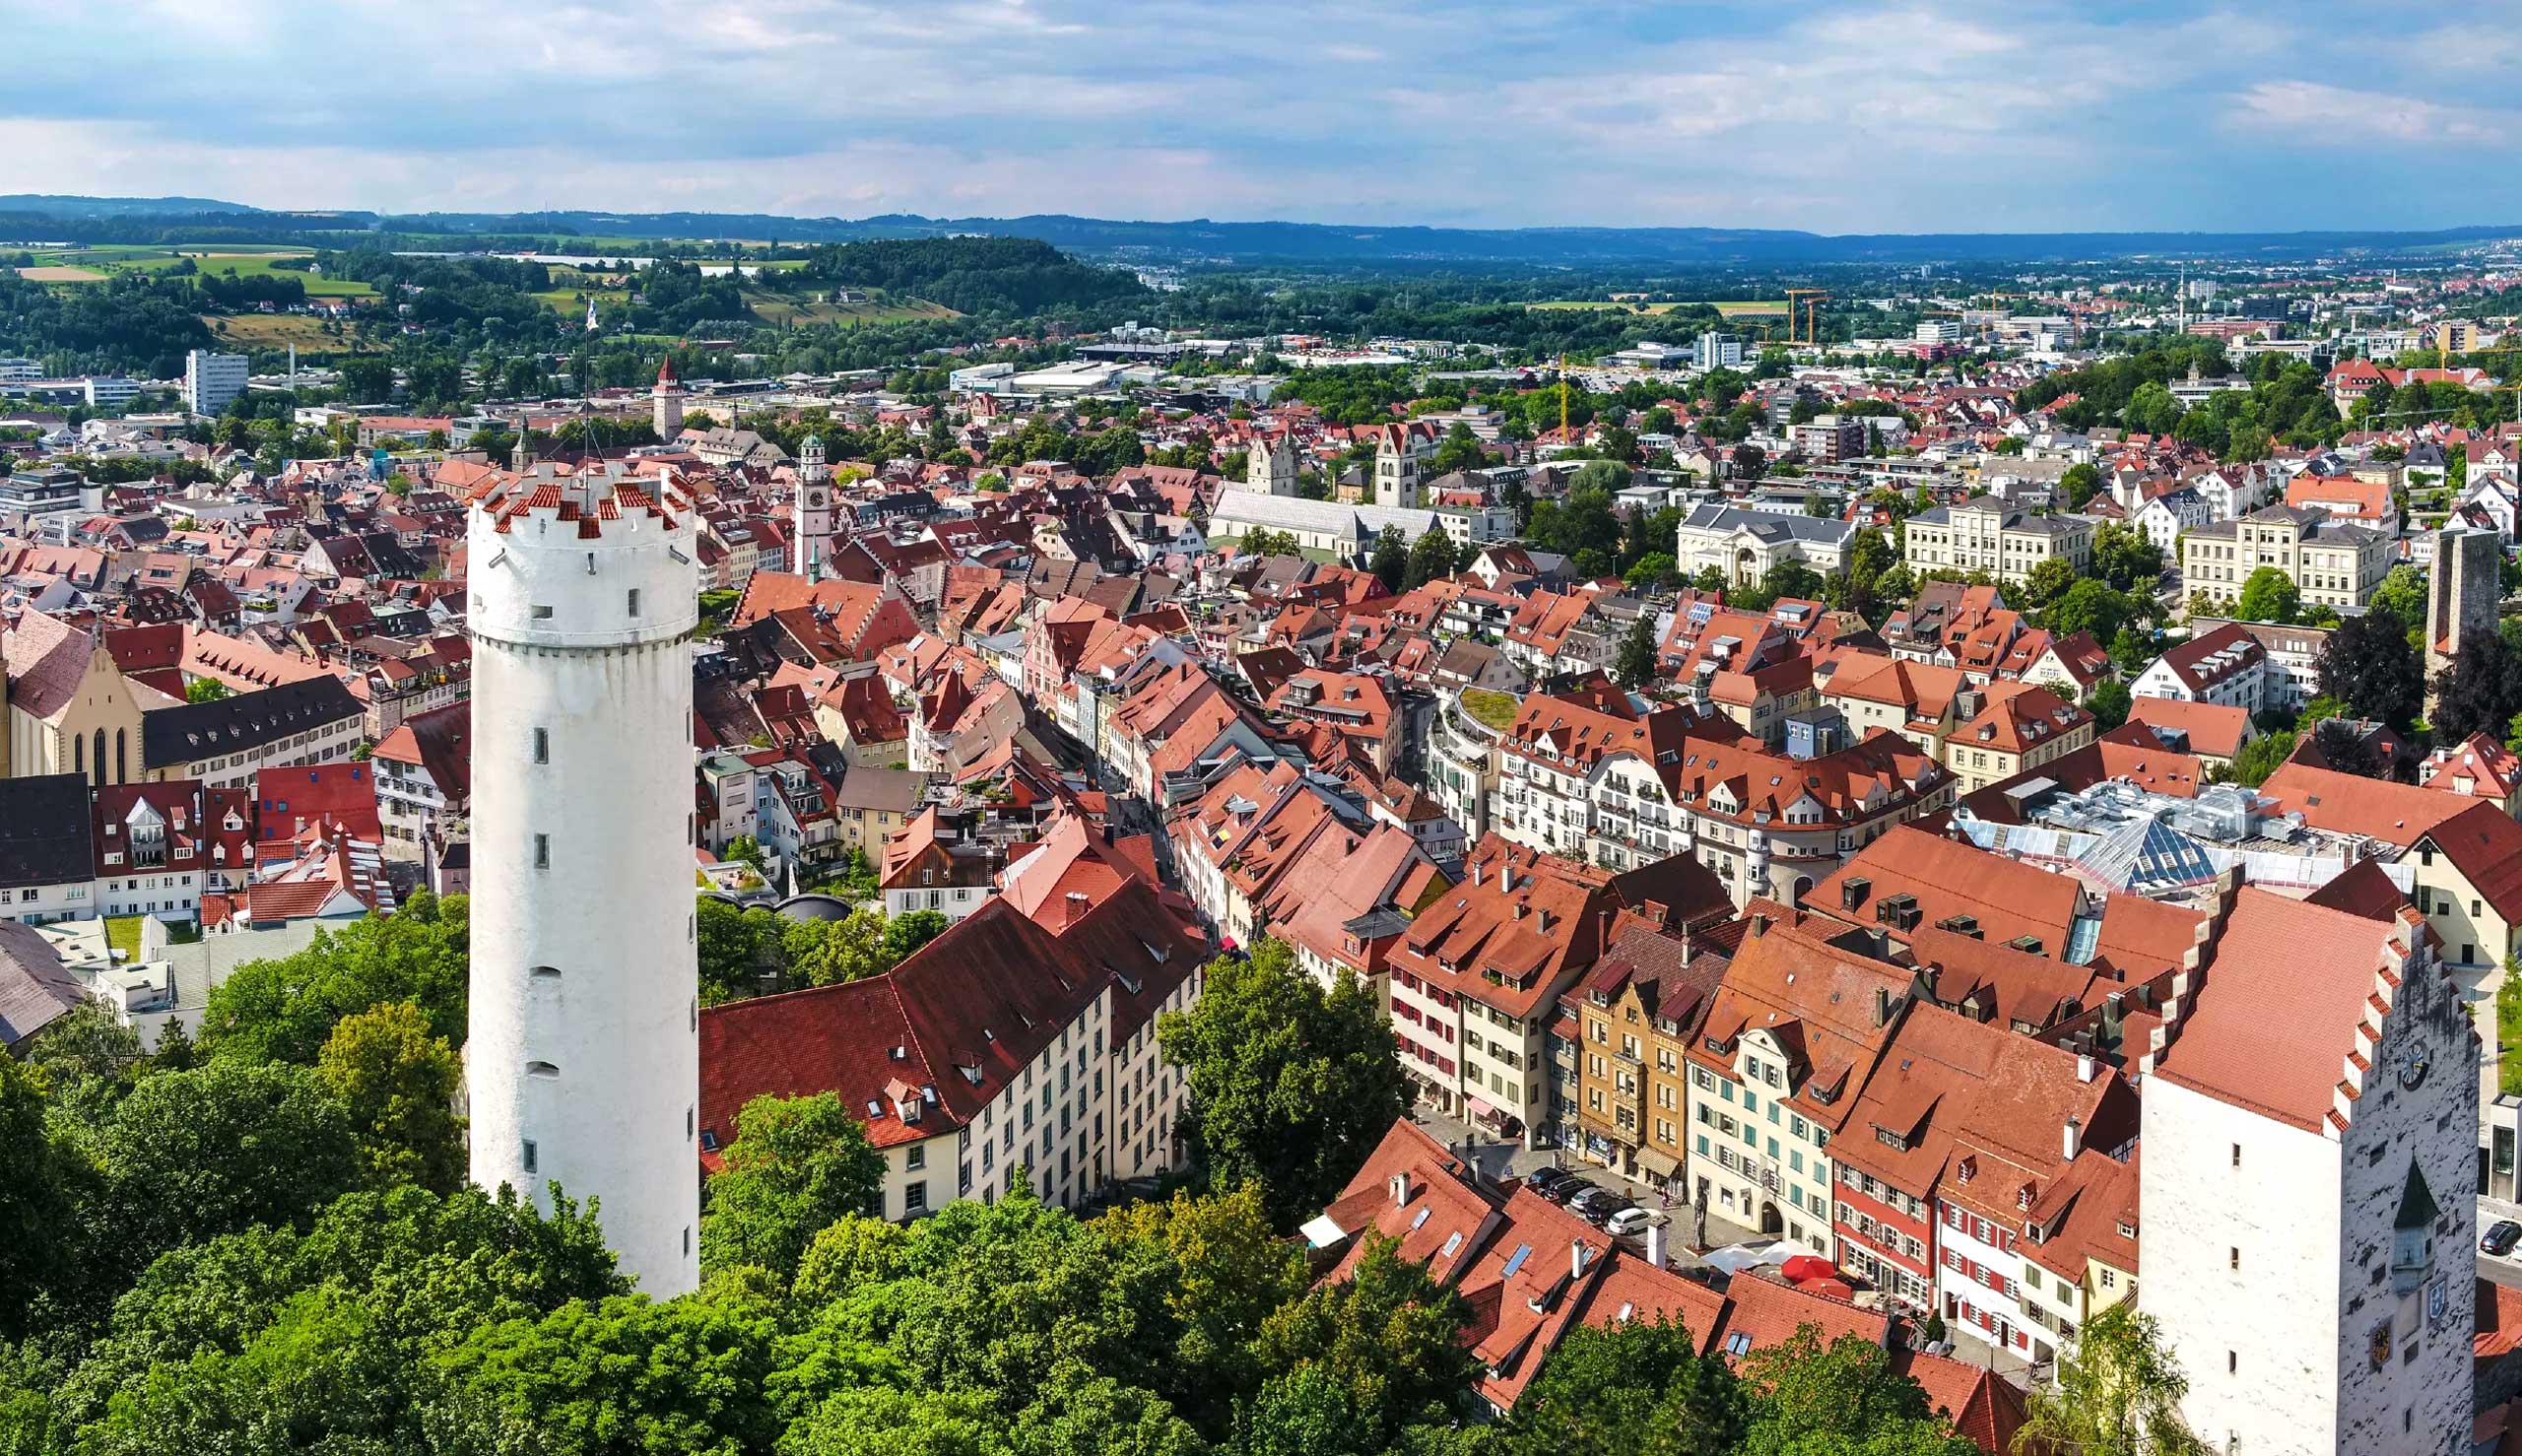 Byen Ravensburg ligger i den populære rejseregion Bodensøen-Oberschwaben-Allgäu og kaldes også tårnbyen. 